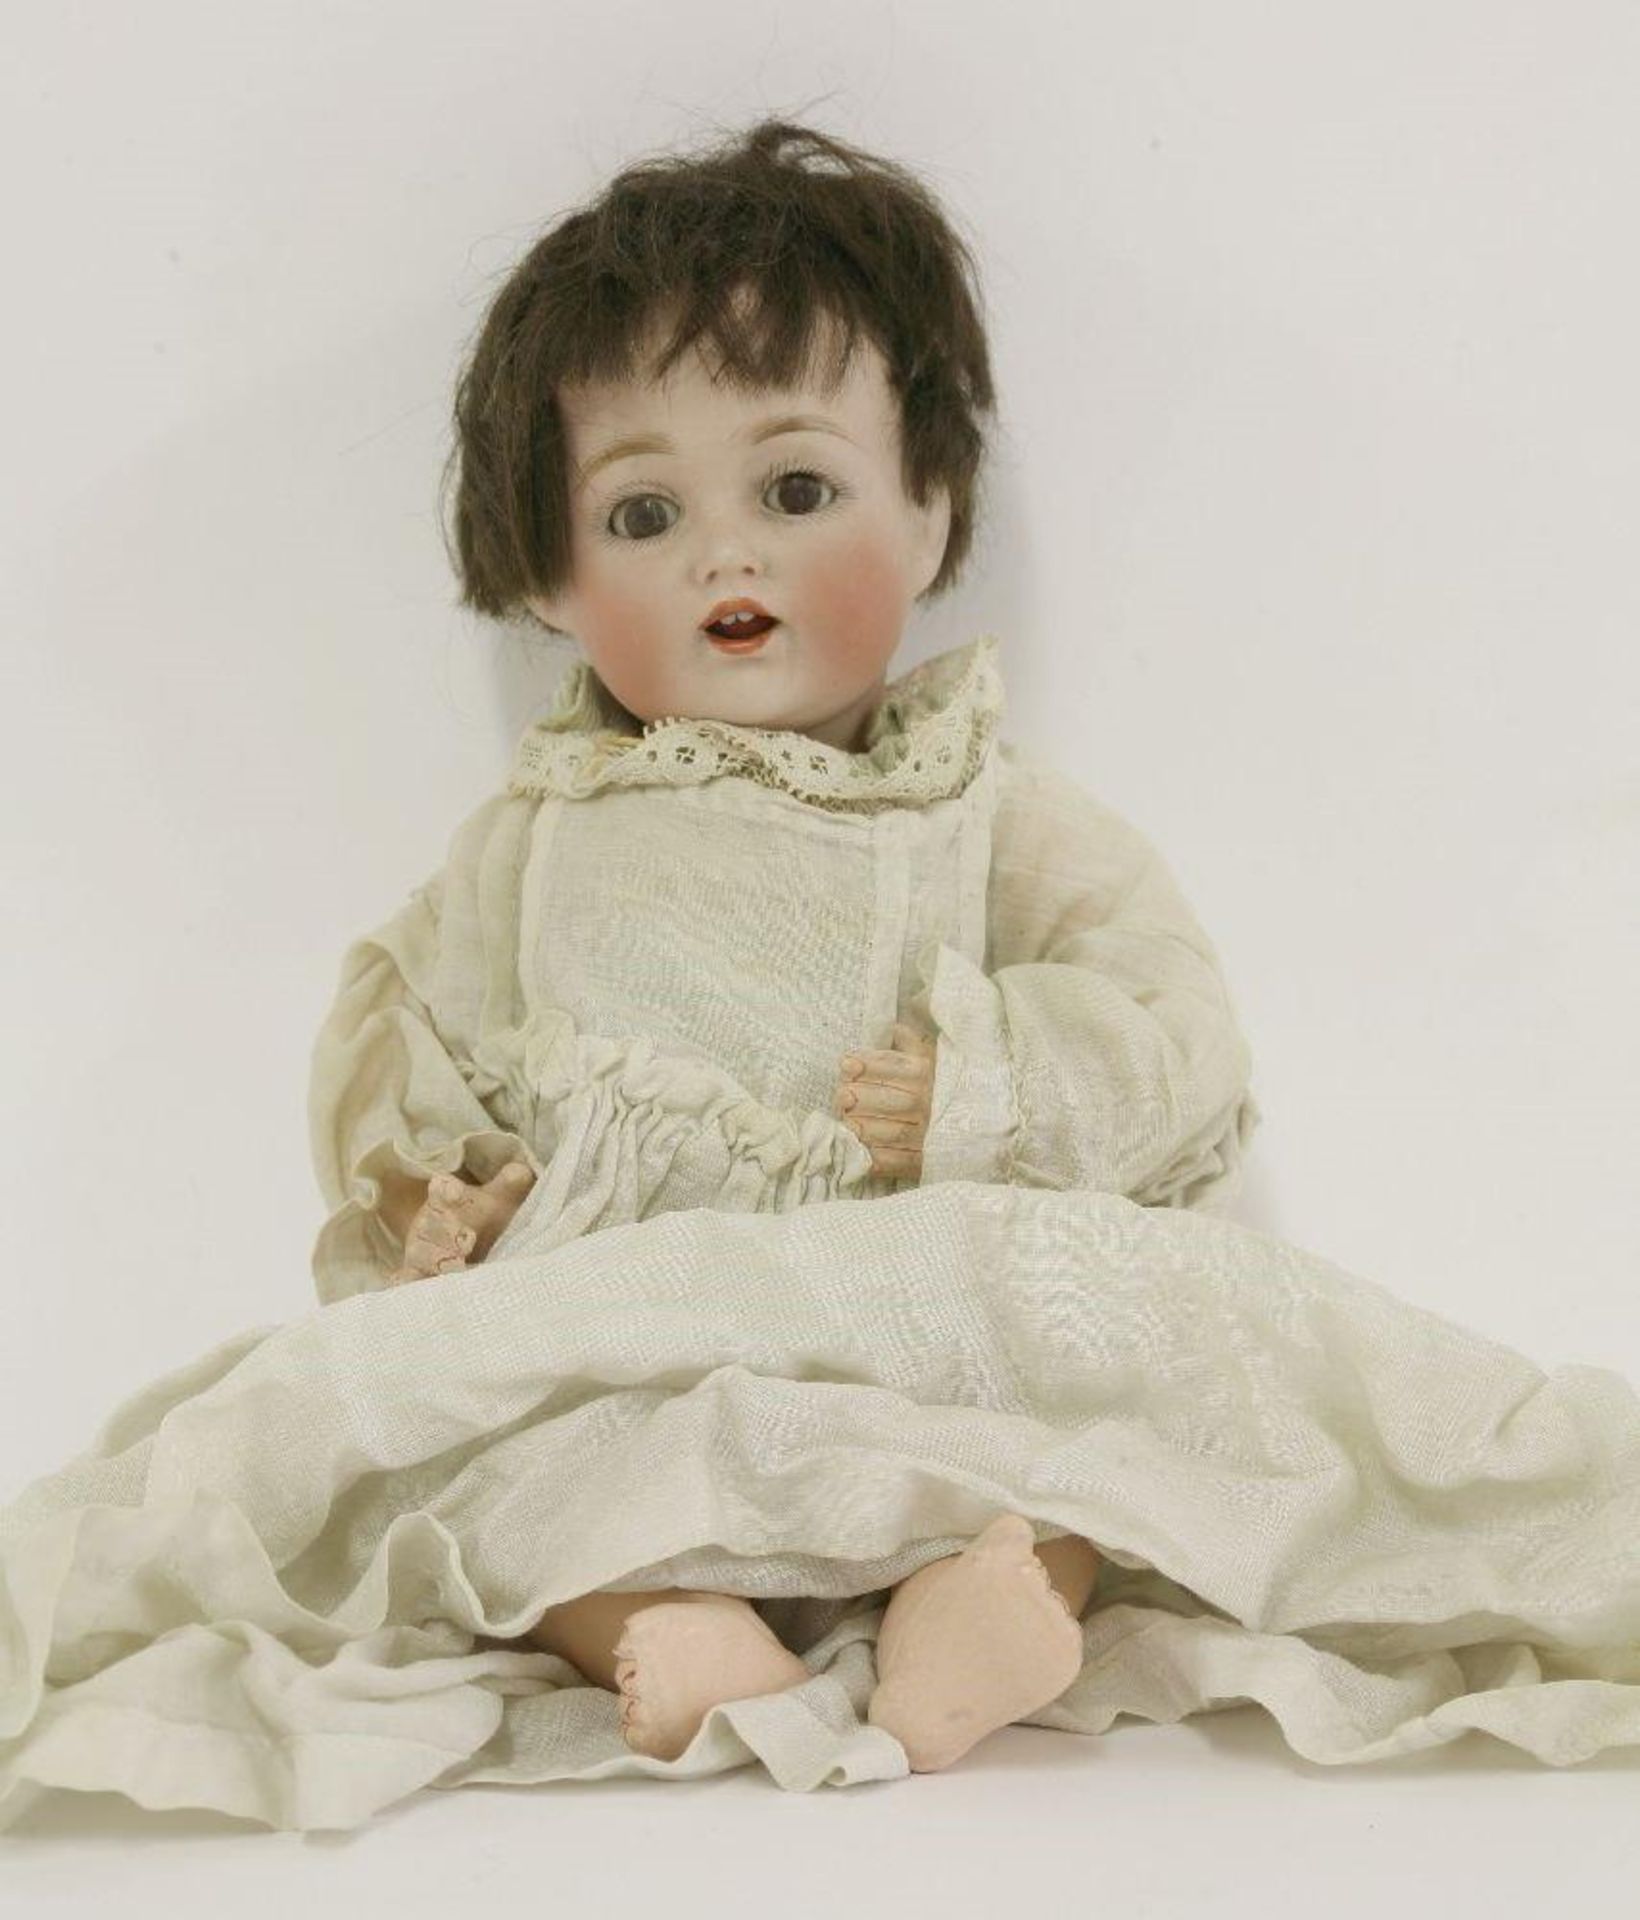 A German bisque head doll, 24cm high